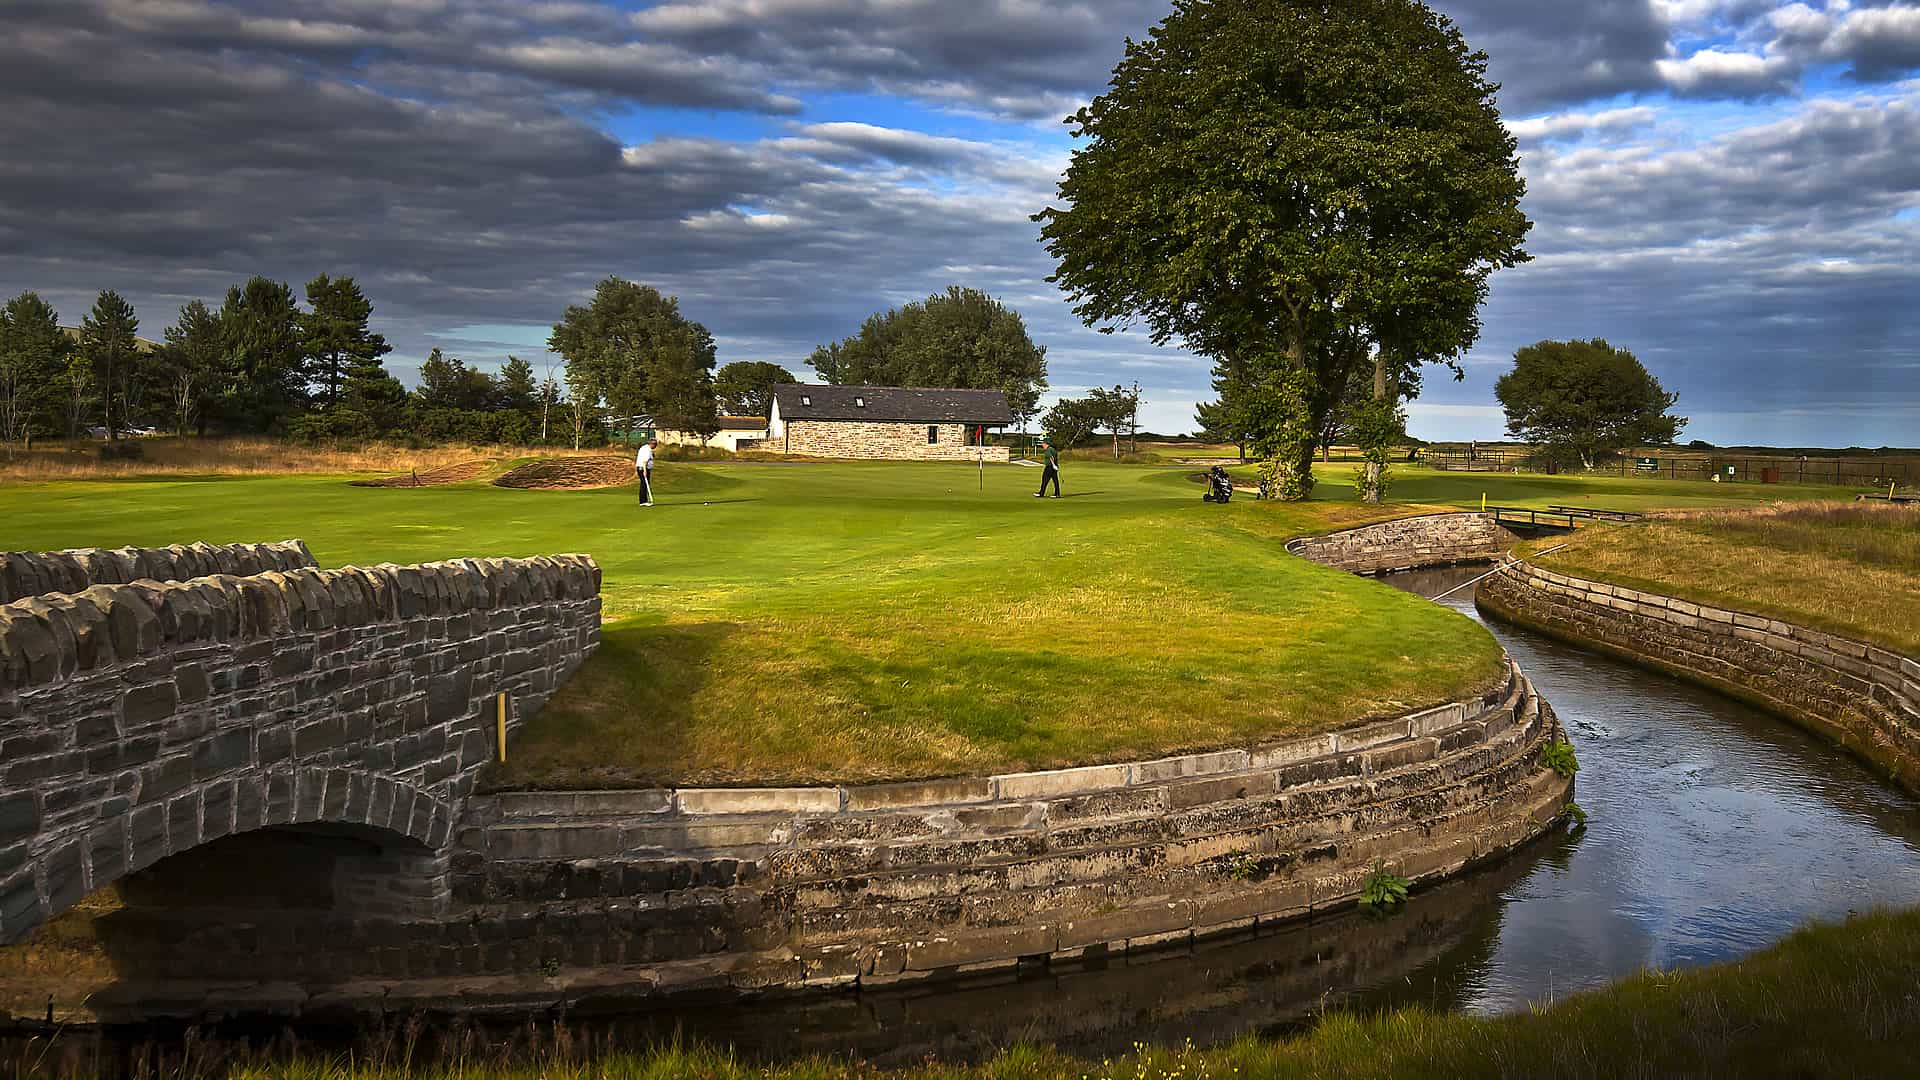 A Golf Course With A Bridge Over A Stream.